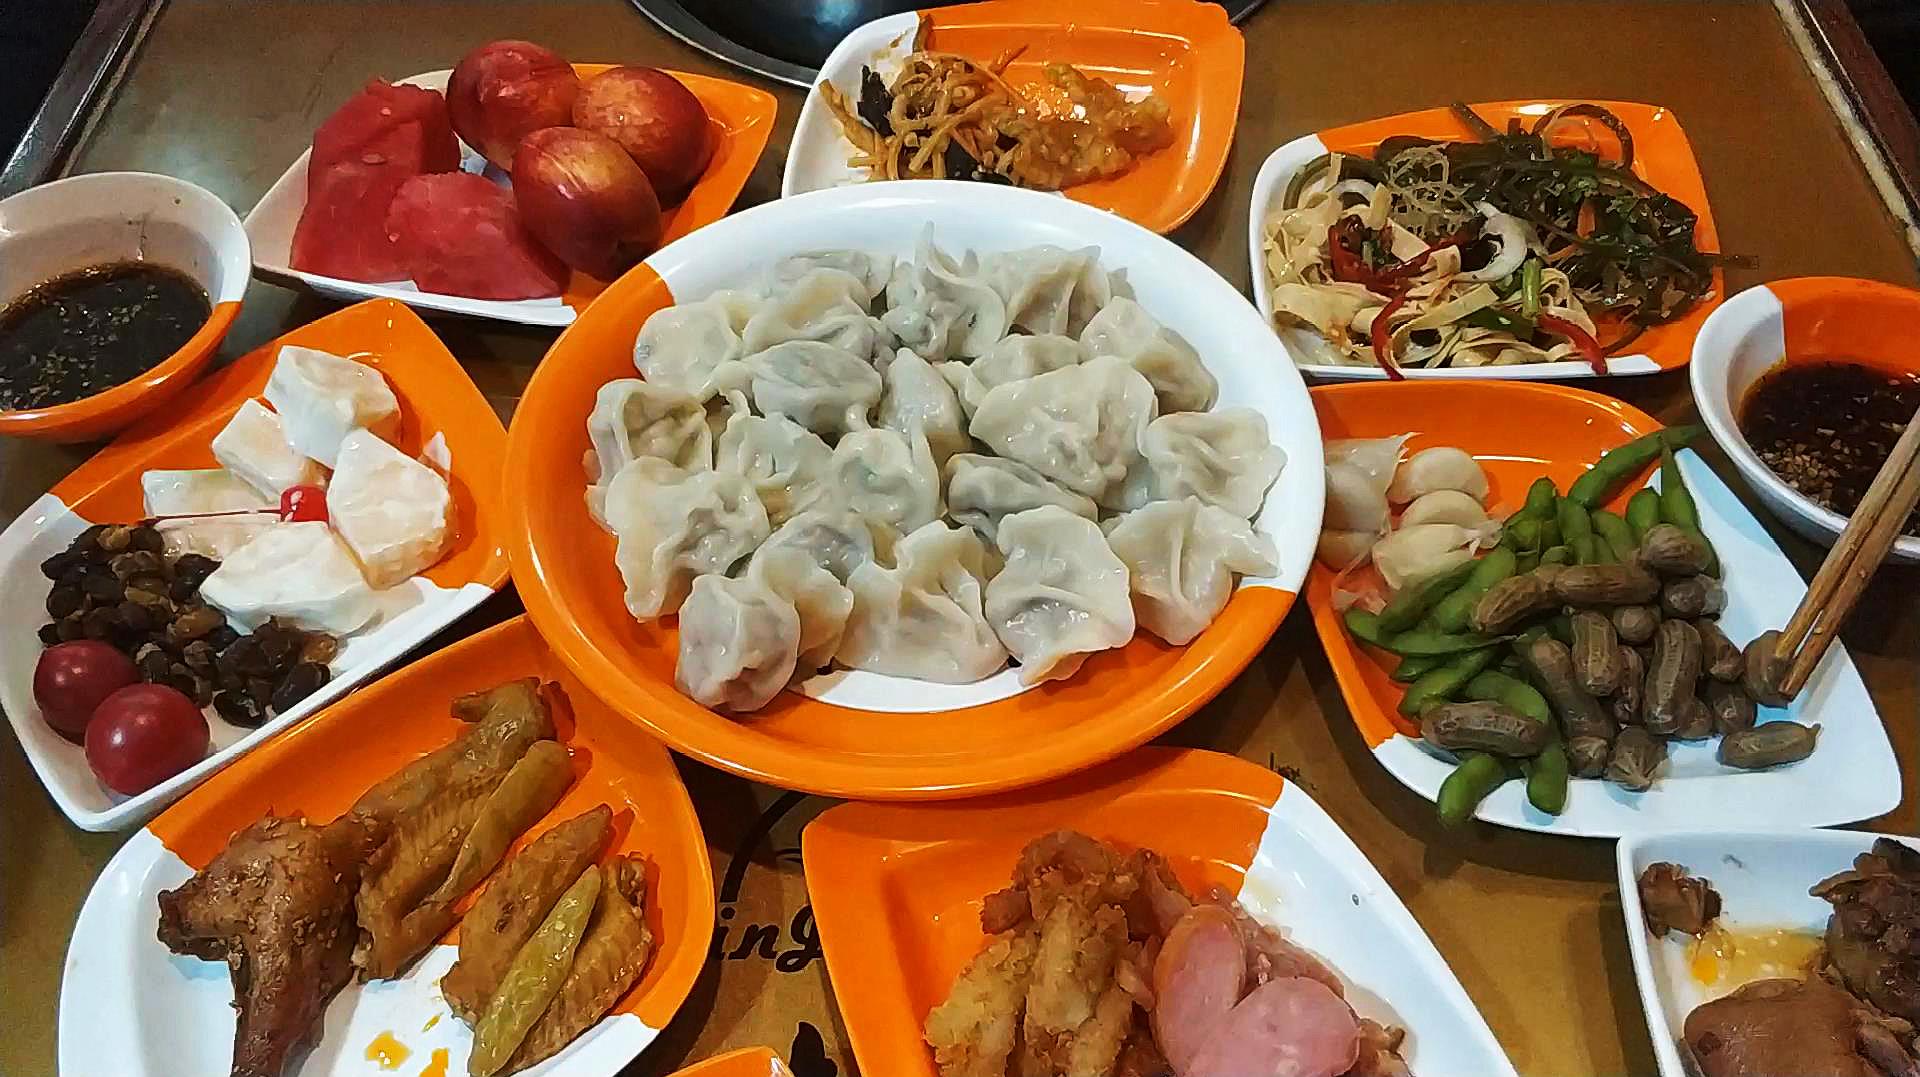 天津32元一位自助水饺!八种饺子,几十种菜随便吃,你能吃多少?